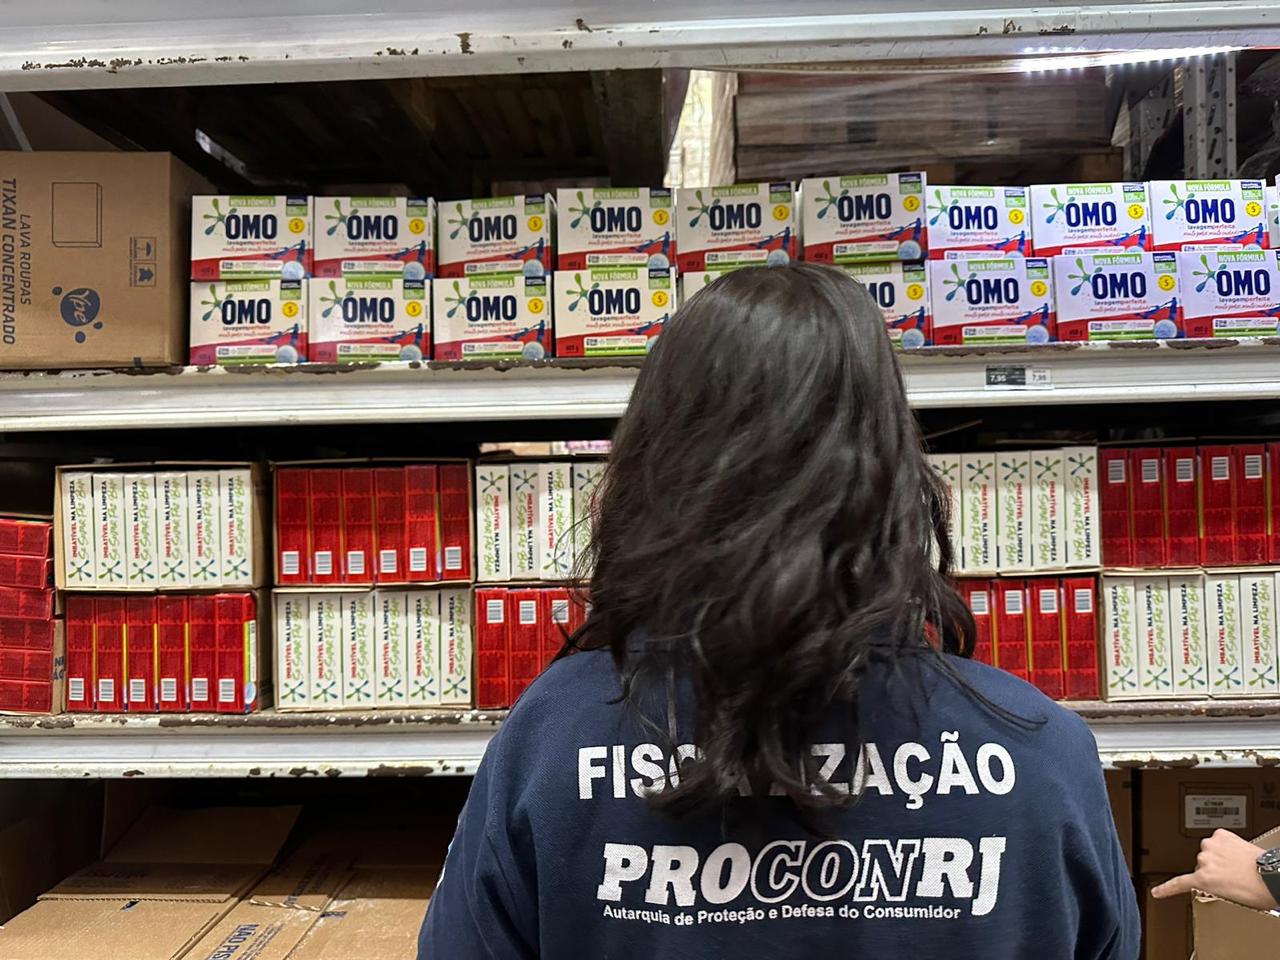 Fiscais do Procon-RJ apreenderam cerca de 30 toneladas de sabão em pó falsificado. Foto : Divulgação Procon